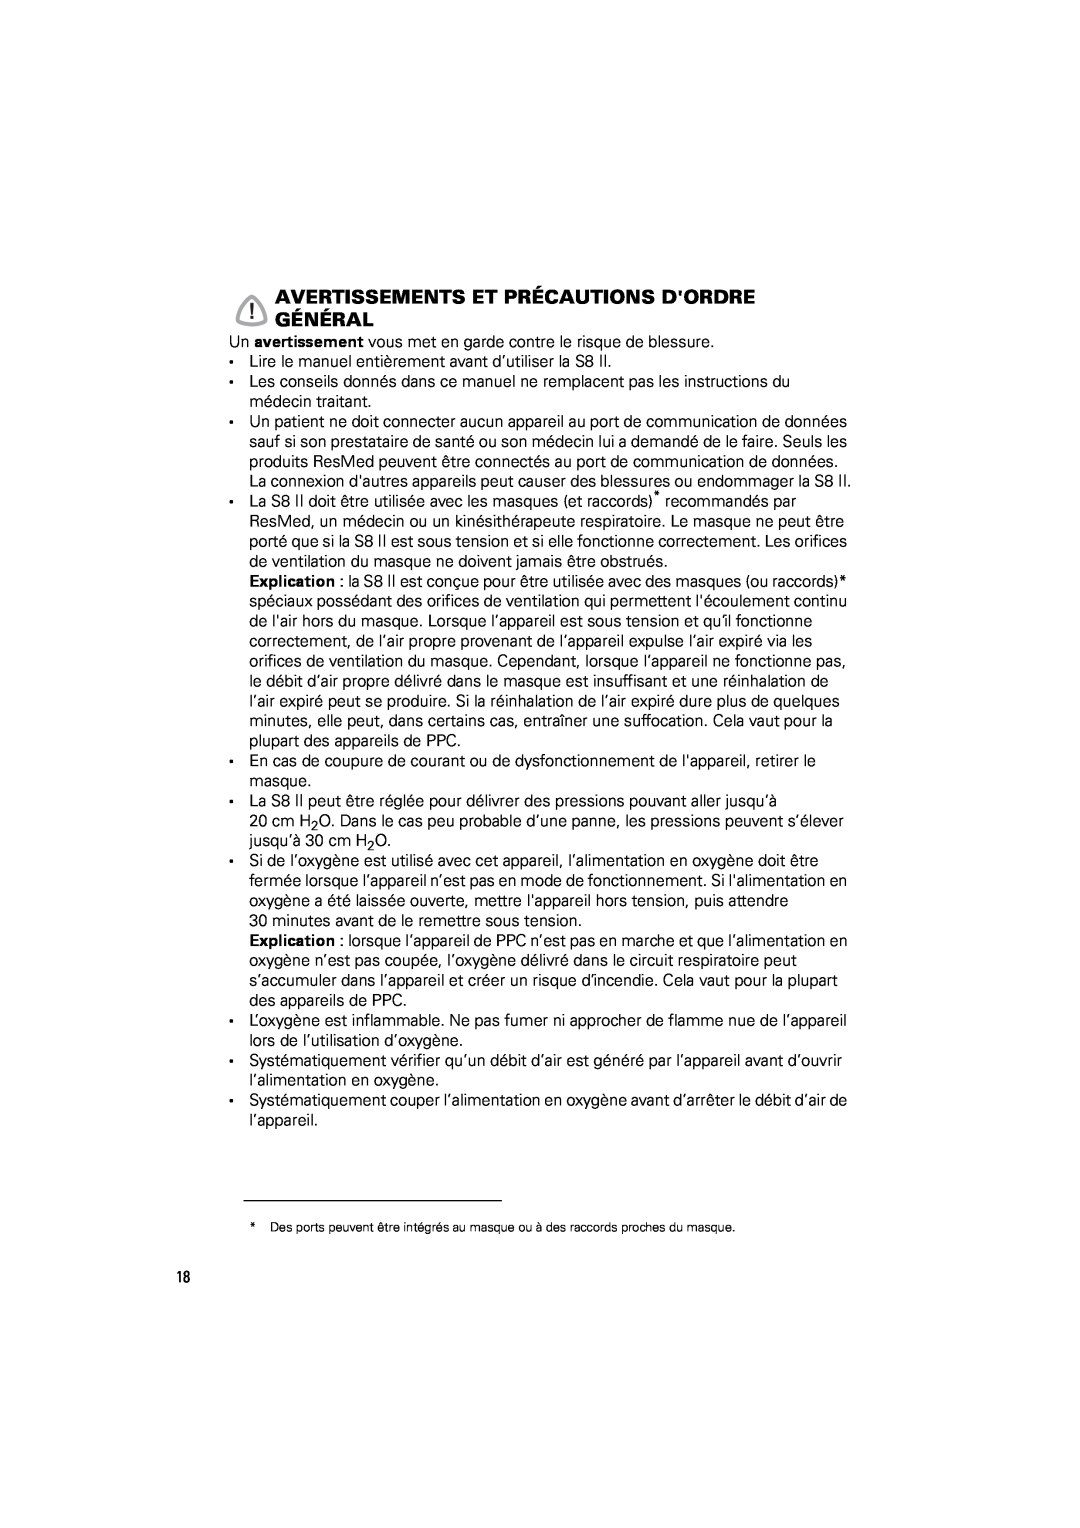 ResMed s8 manual Avertissementsgénéral Et Précautions Dordre 